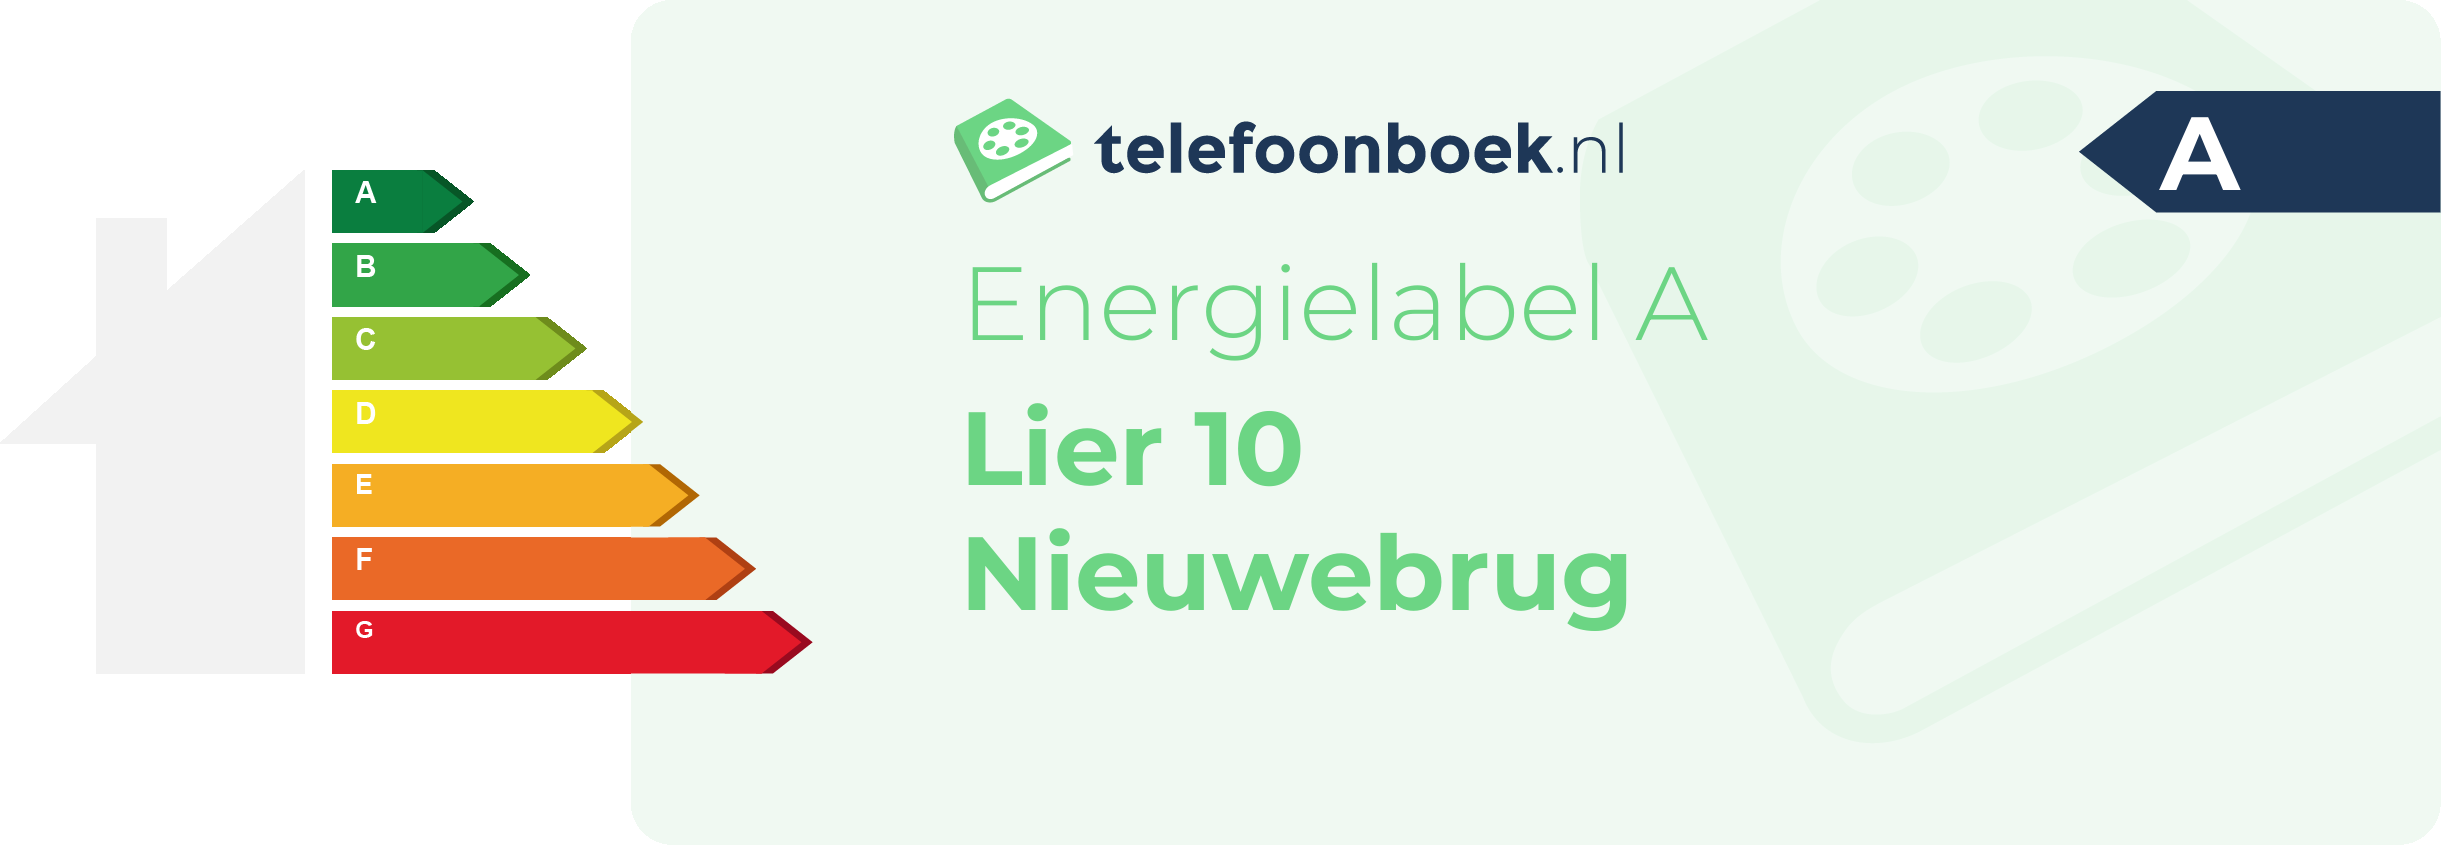 Energielabel Lier 10 Nieuwebrug